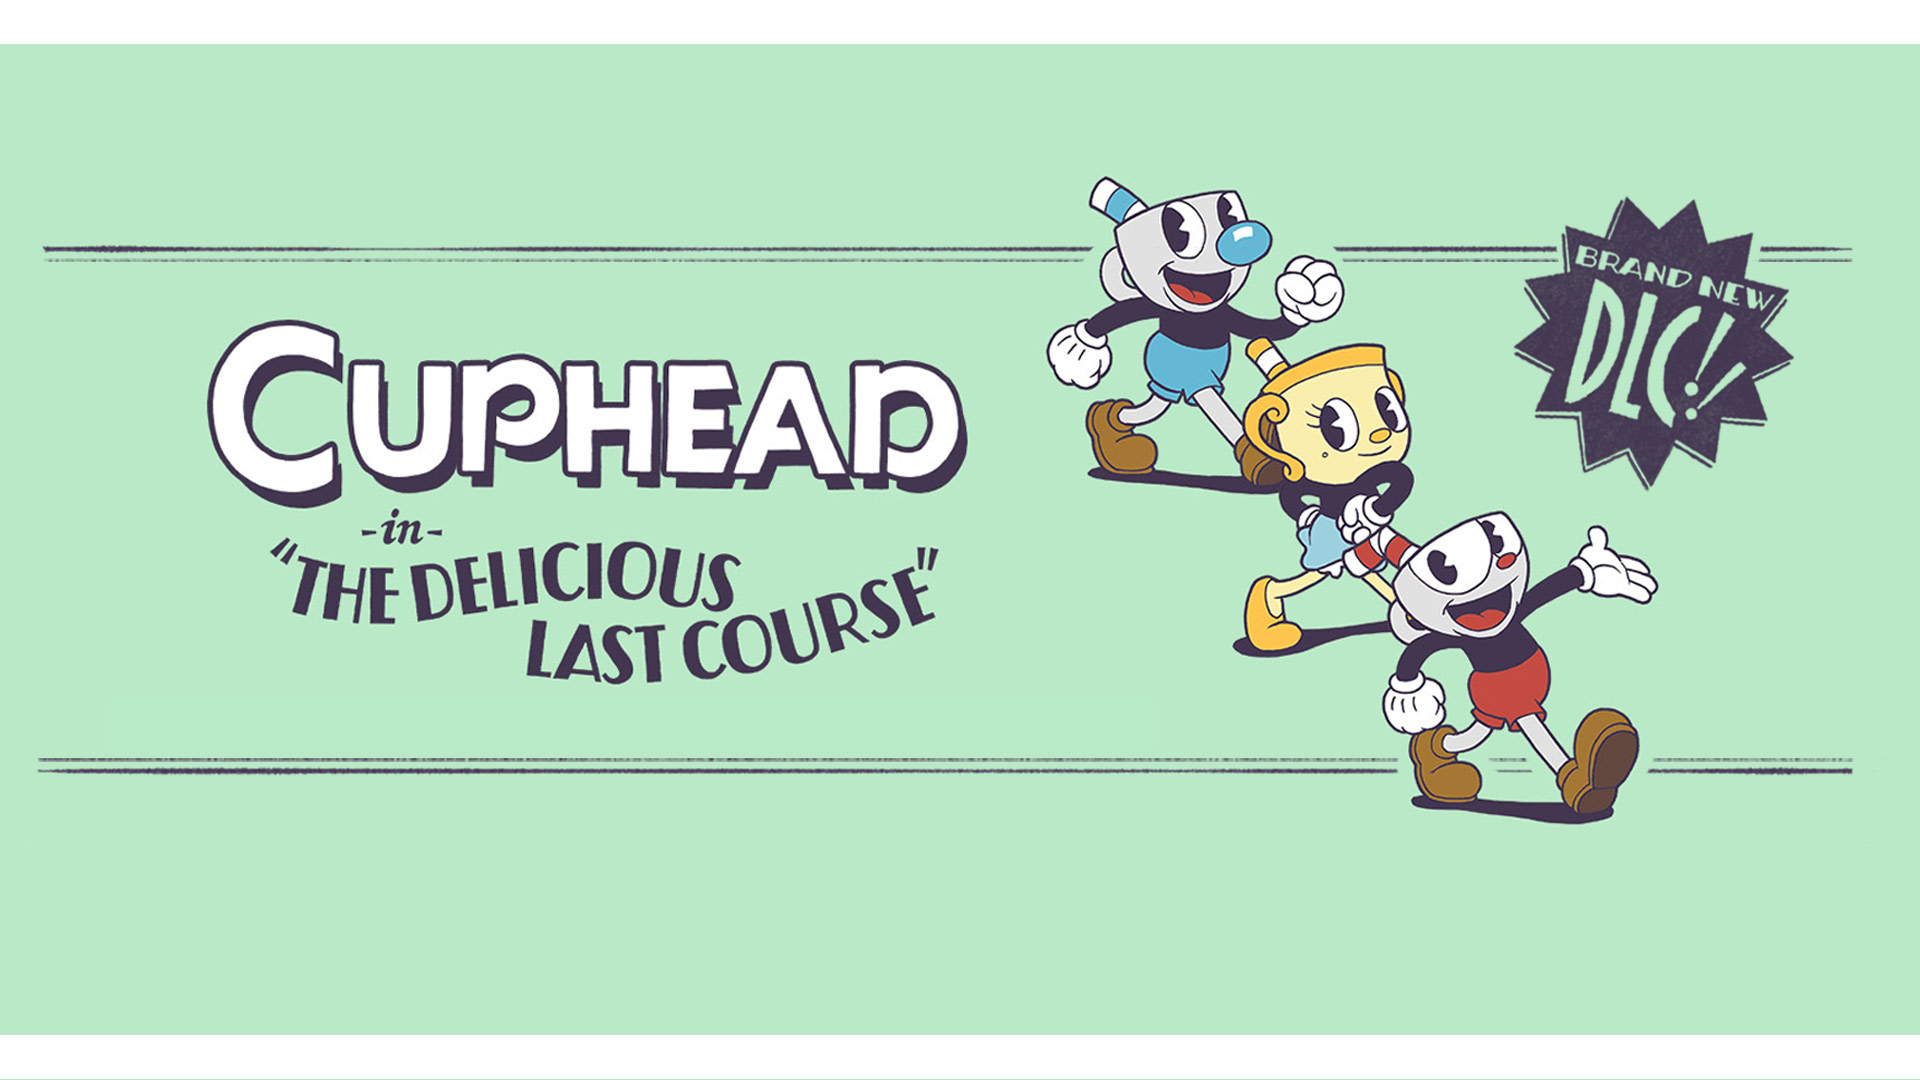 Cuphead dans The delicious last course, Un tout nouveau DLC!, trois personnages de Cuphead prenant la pause